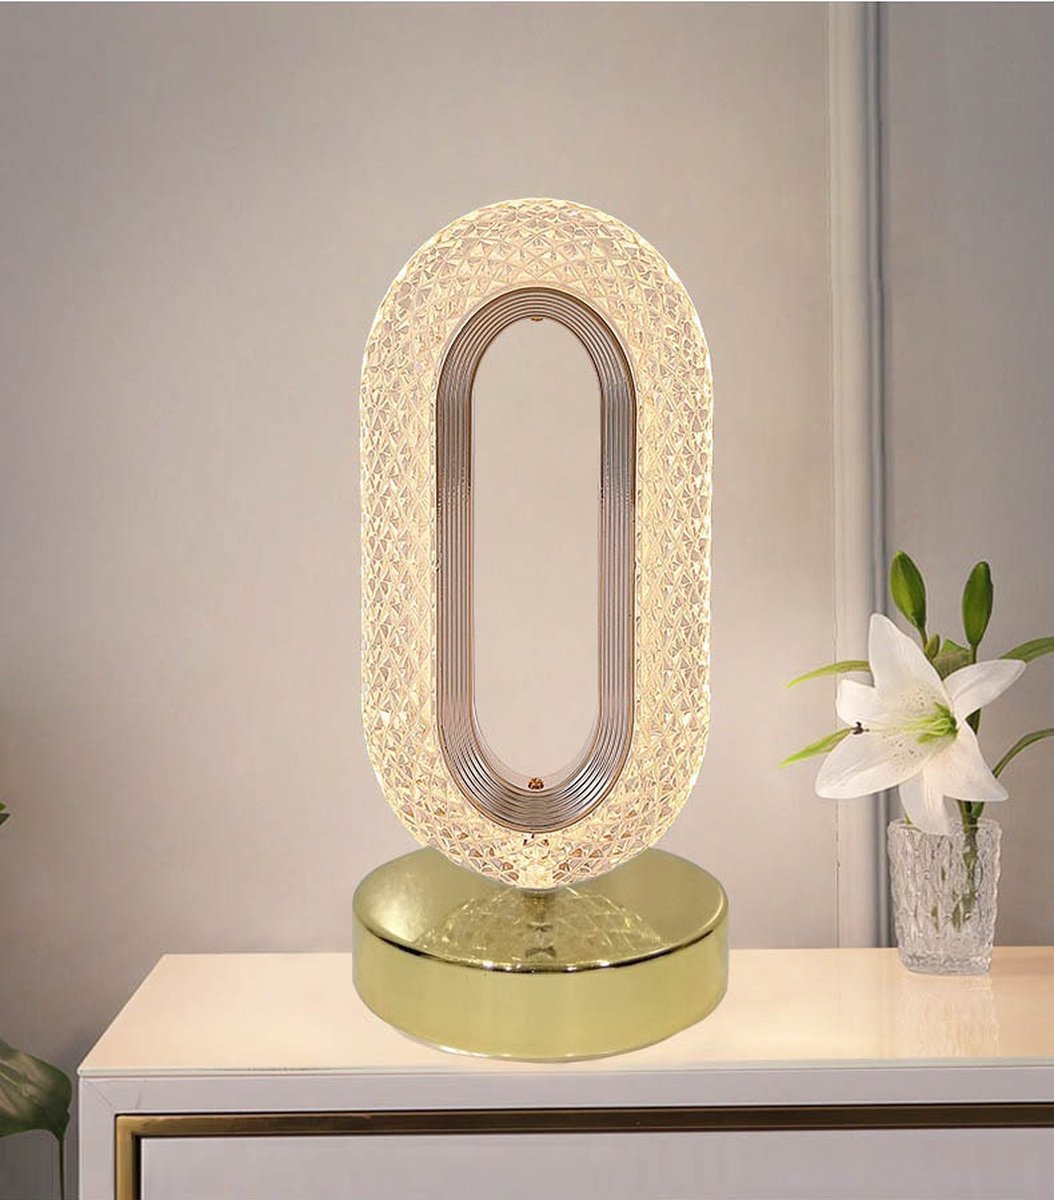 Lampe de lit Lampe de table Homepage Eclairage Salon Spiral Romantique  Chambre Moderne Décoration Lumineuse |(Argent)